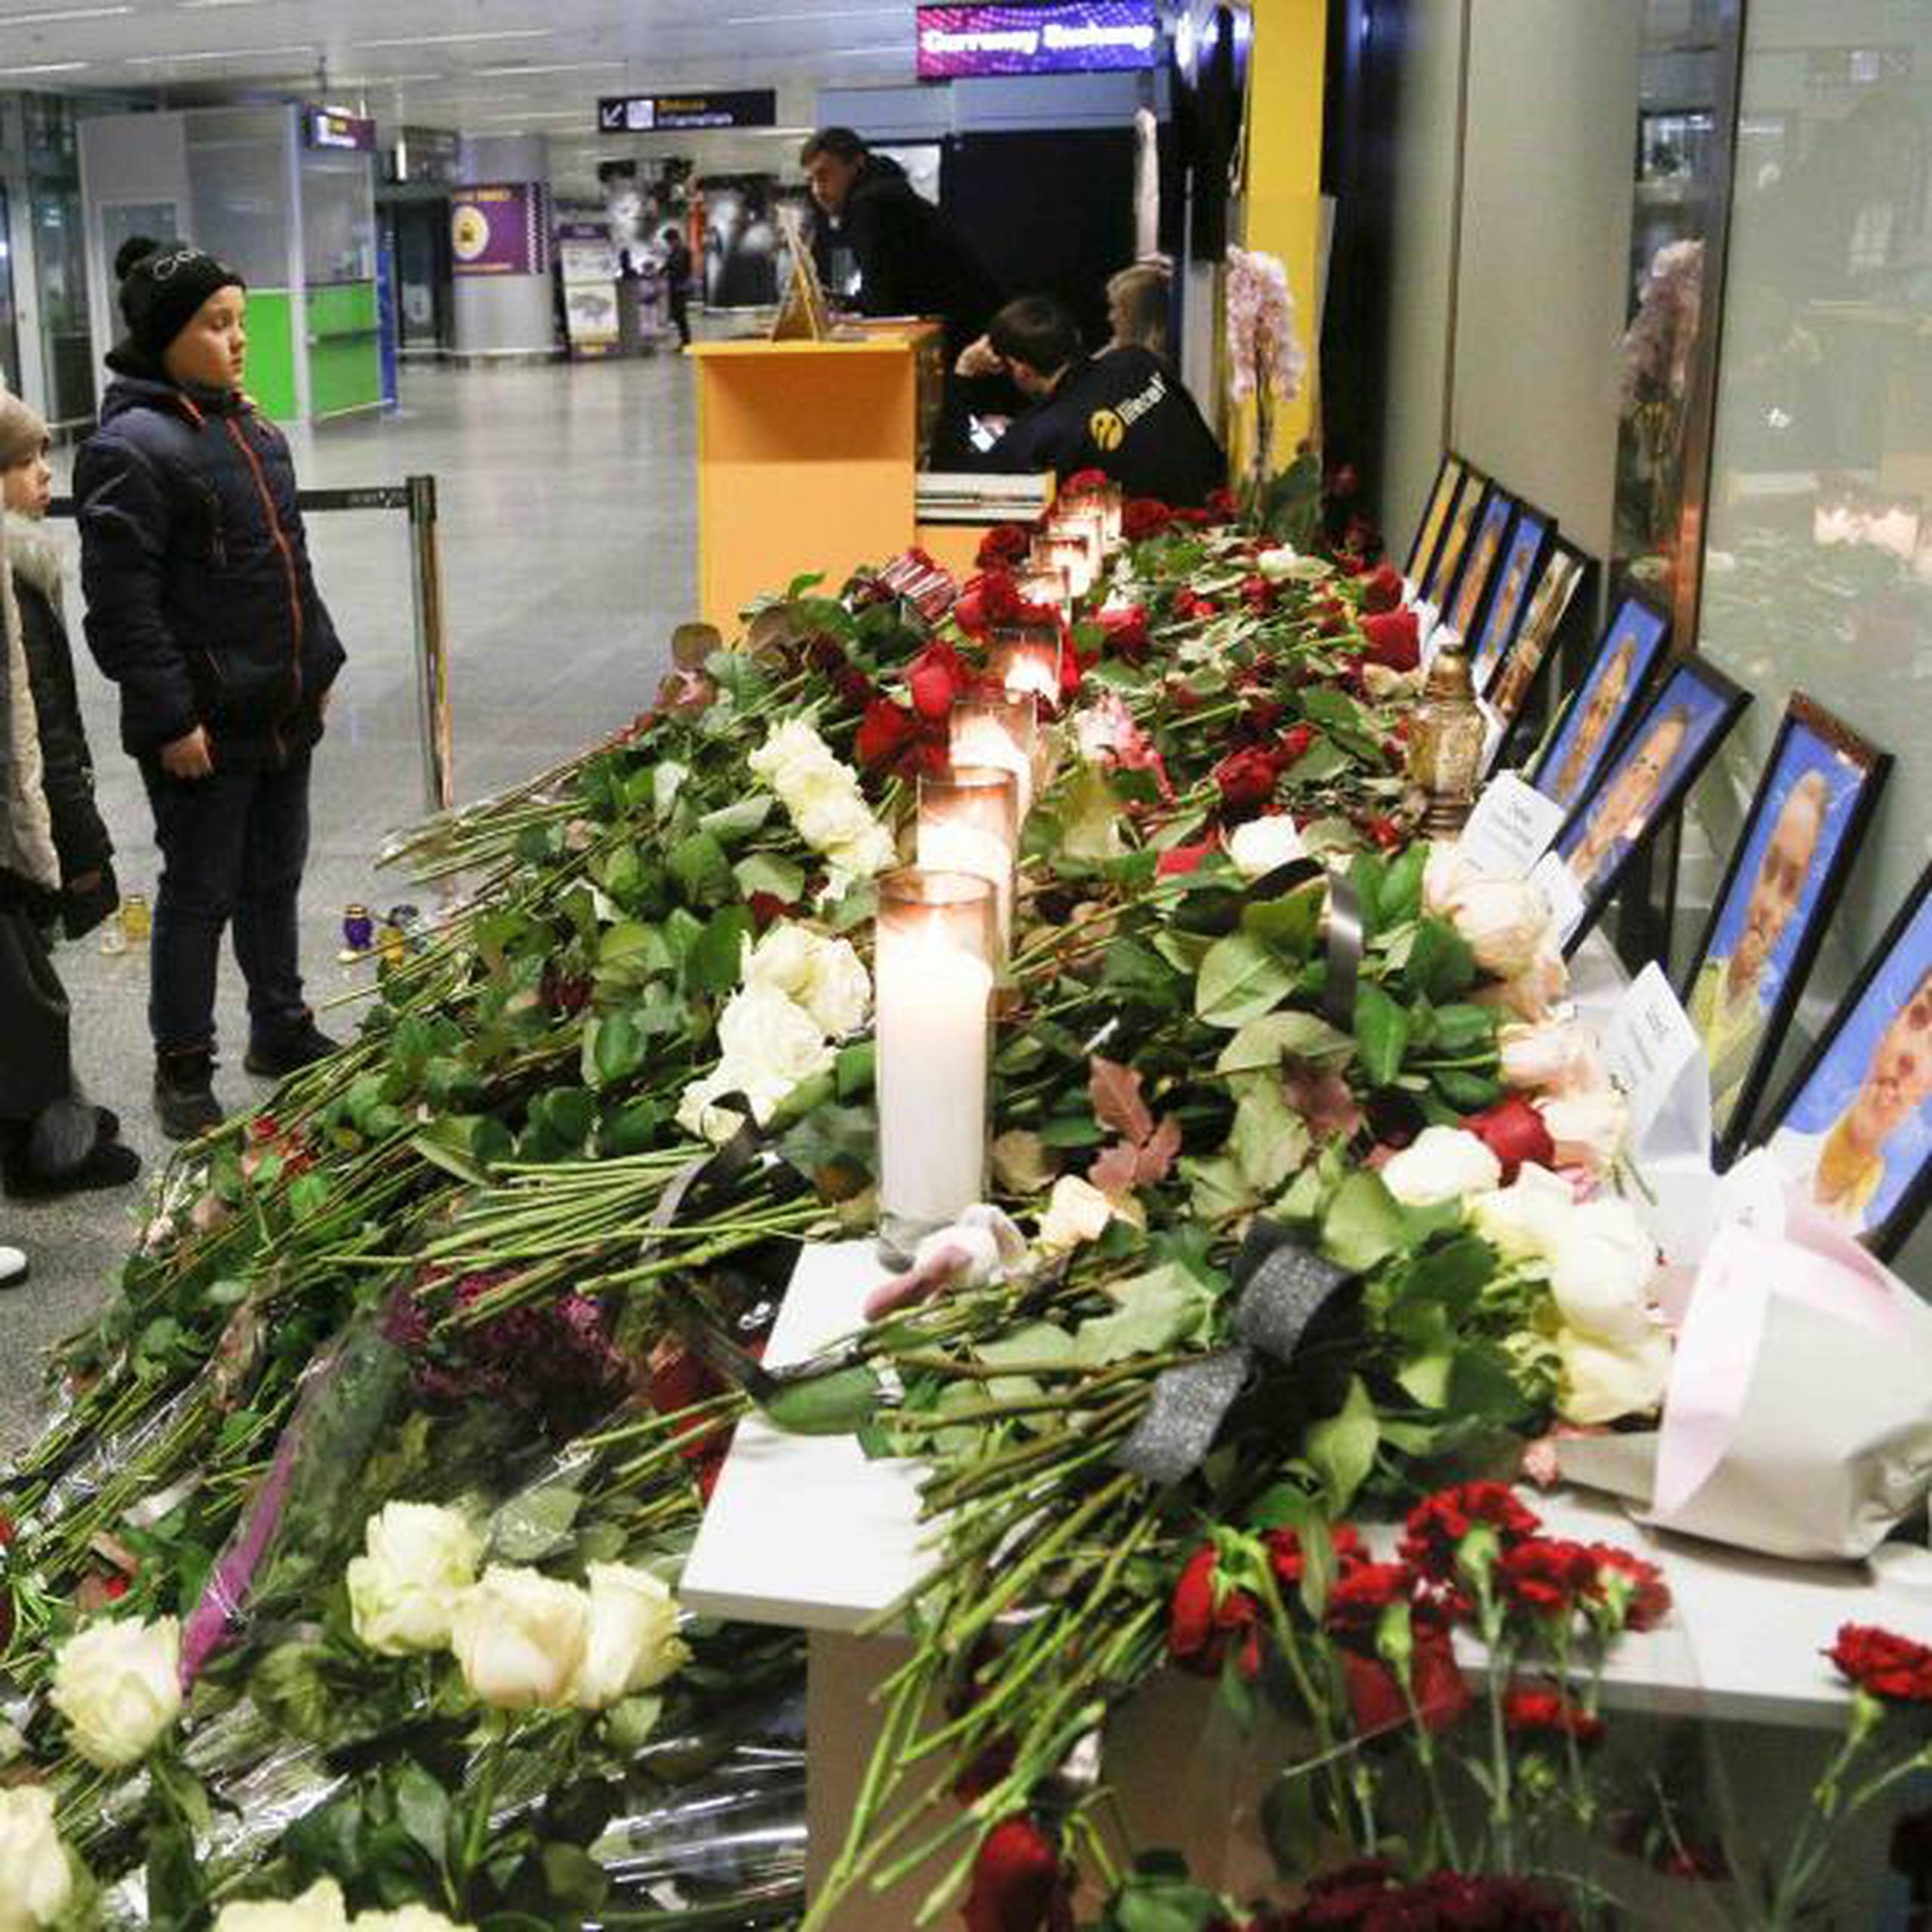 A bordo de la aeronave accidentada viajaban 167 pasajeros y nueve miembros de la tripulación de varios países, incluyendo 82 iraníes, al menos 63 canadienses y 11 ucranianos, según las autoridades. (AP)